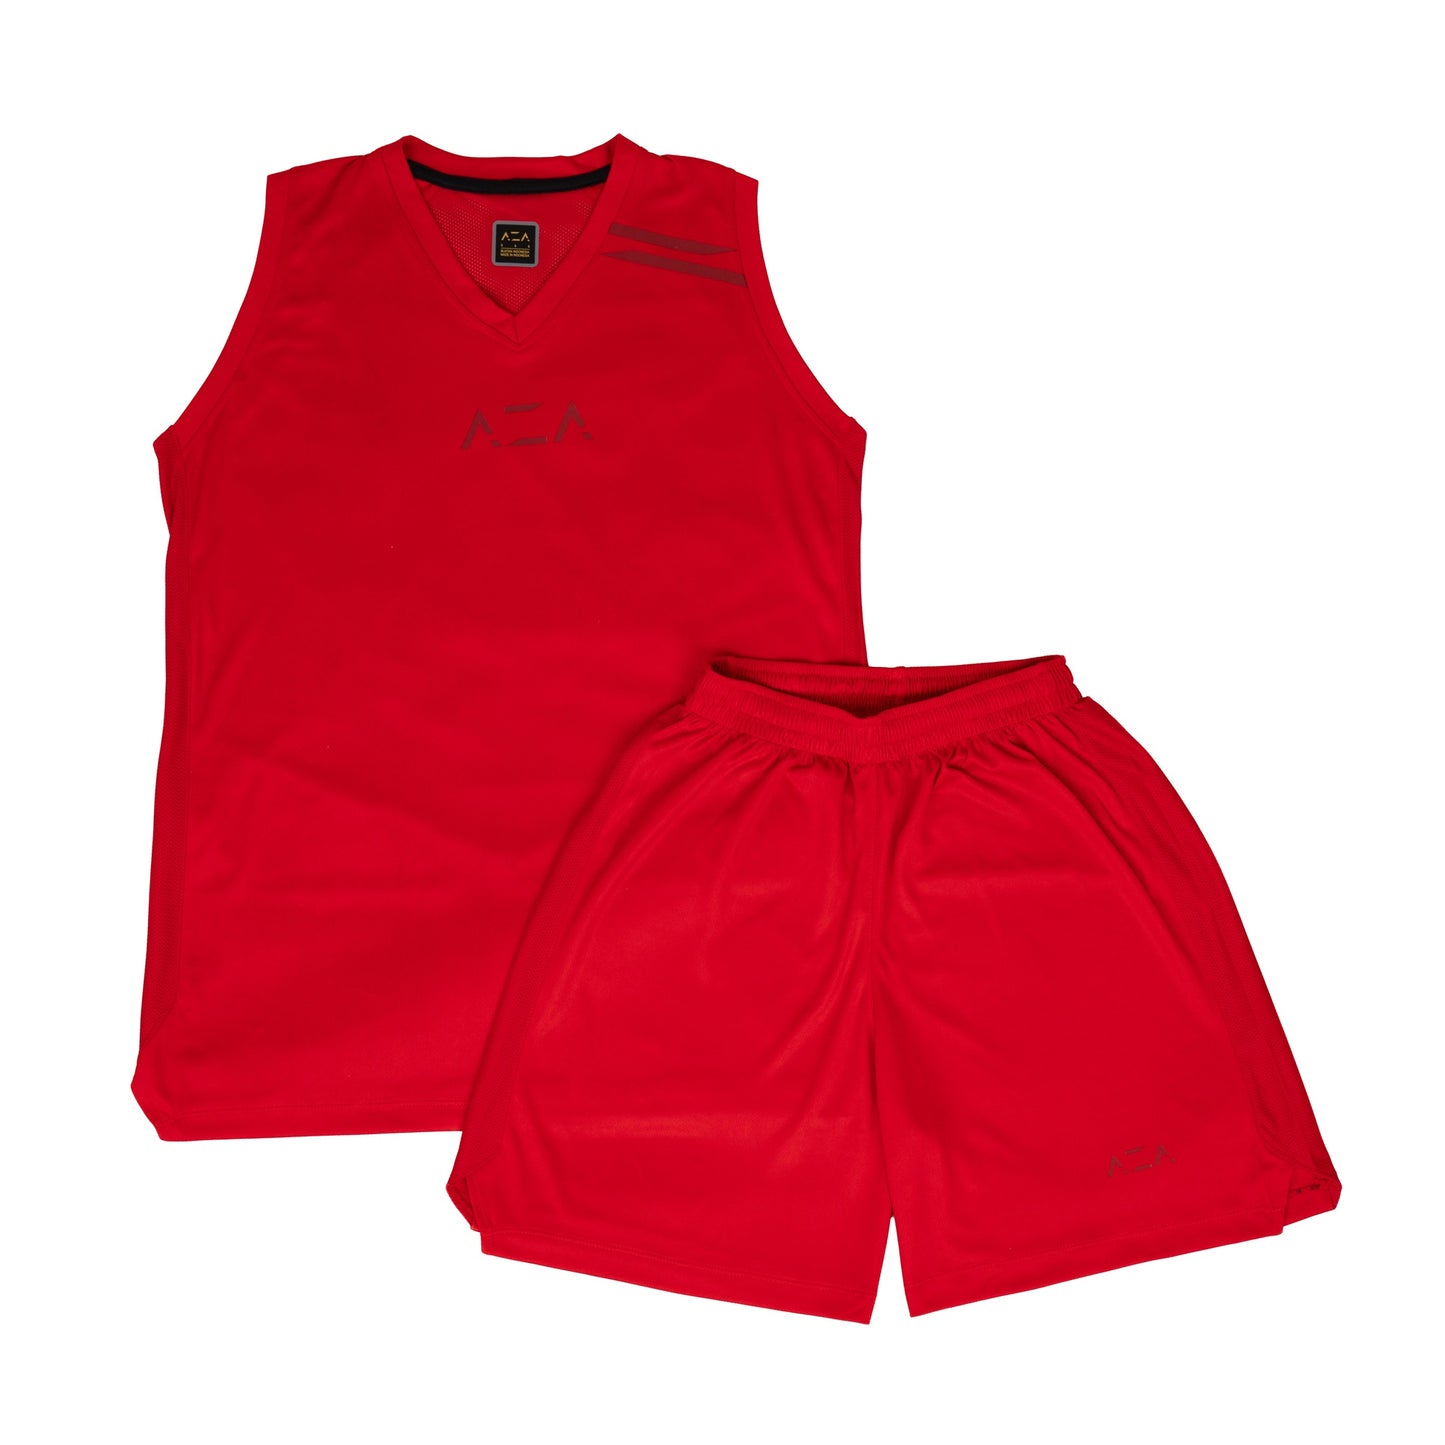 AZA Short Pants Basketball Basic Tone to Tone - Red